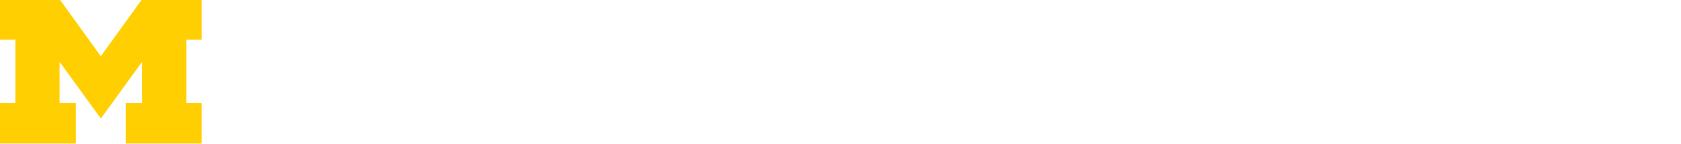 S.M. Wu Manufacturing Research Center Logo